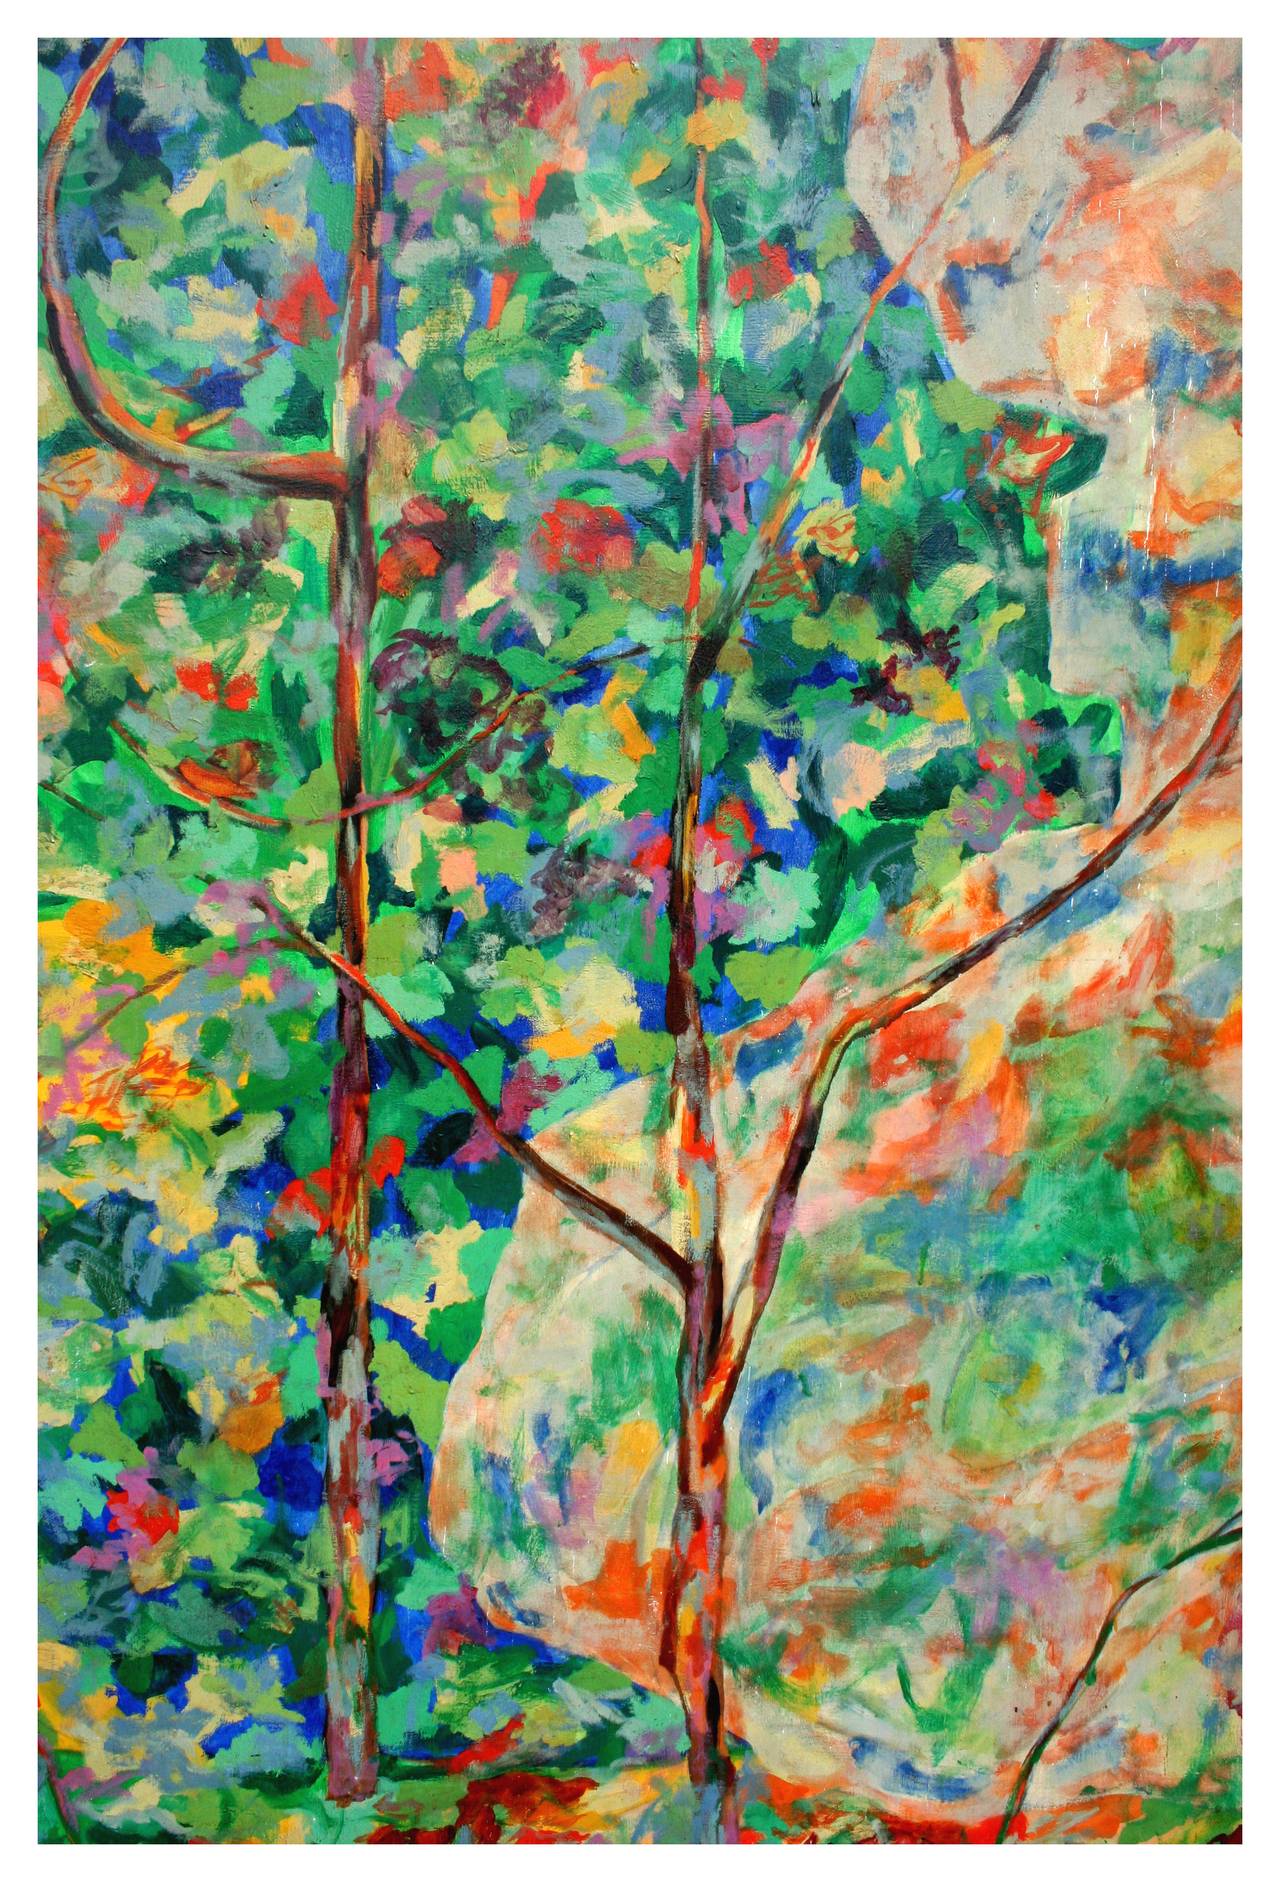 Wild The Flowers, Berkeley - Painting by Louis Earnest Nadalini